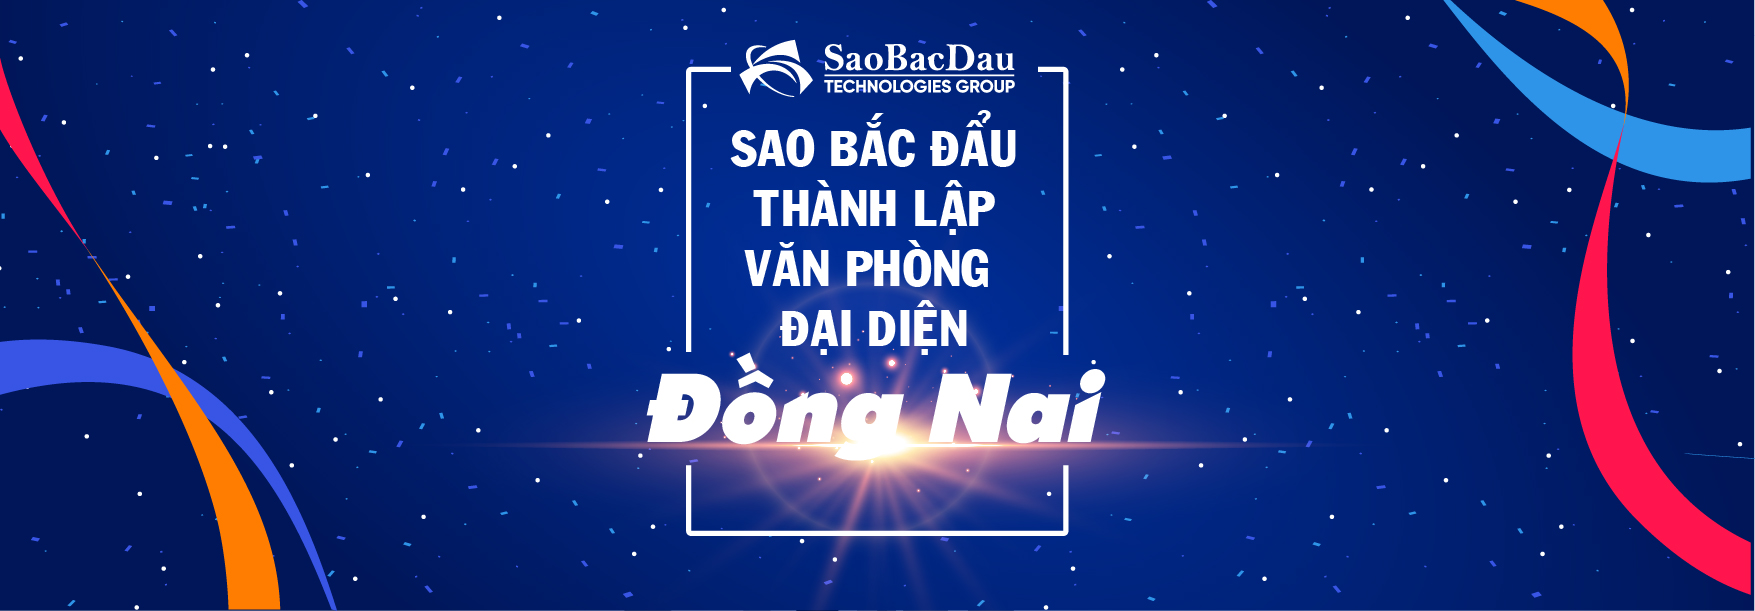 Sao Bac Dau established a representative office in Dong Nai